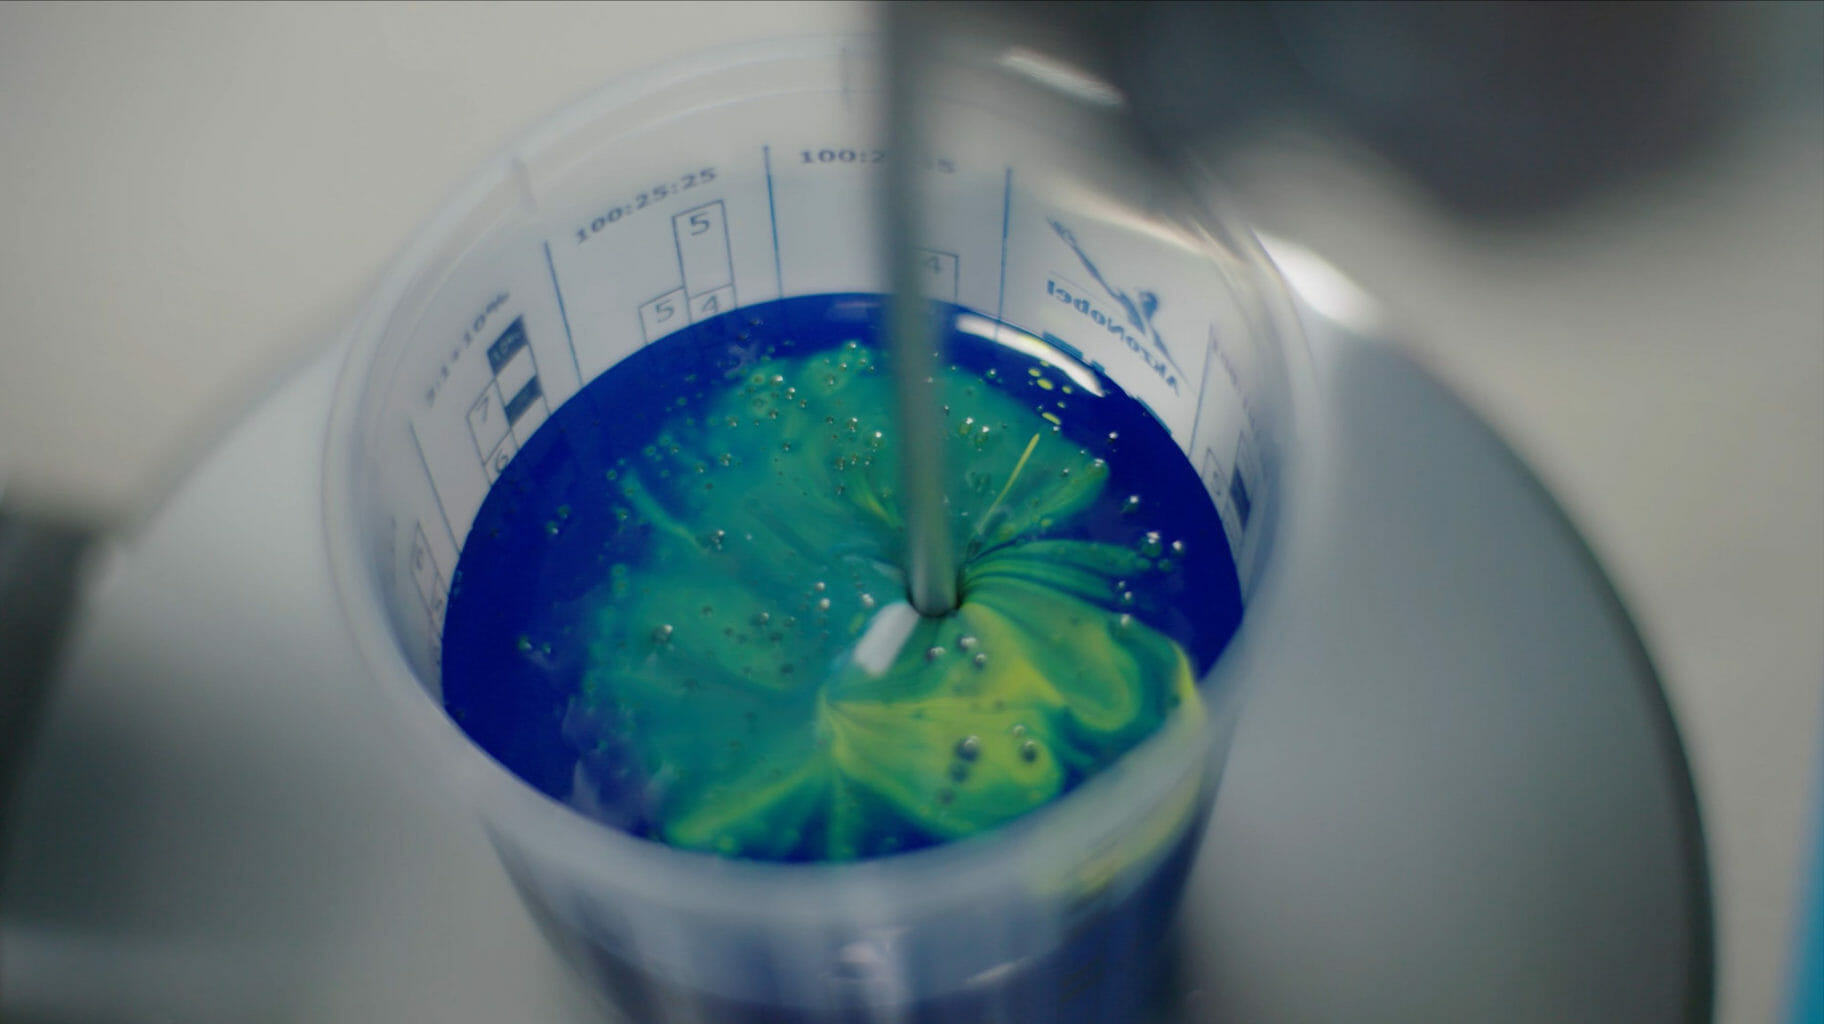 et nærbilde av en flaske med blå og grønn maling